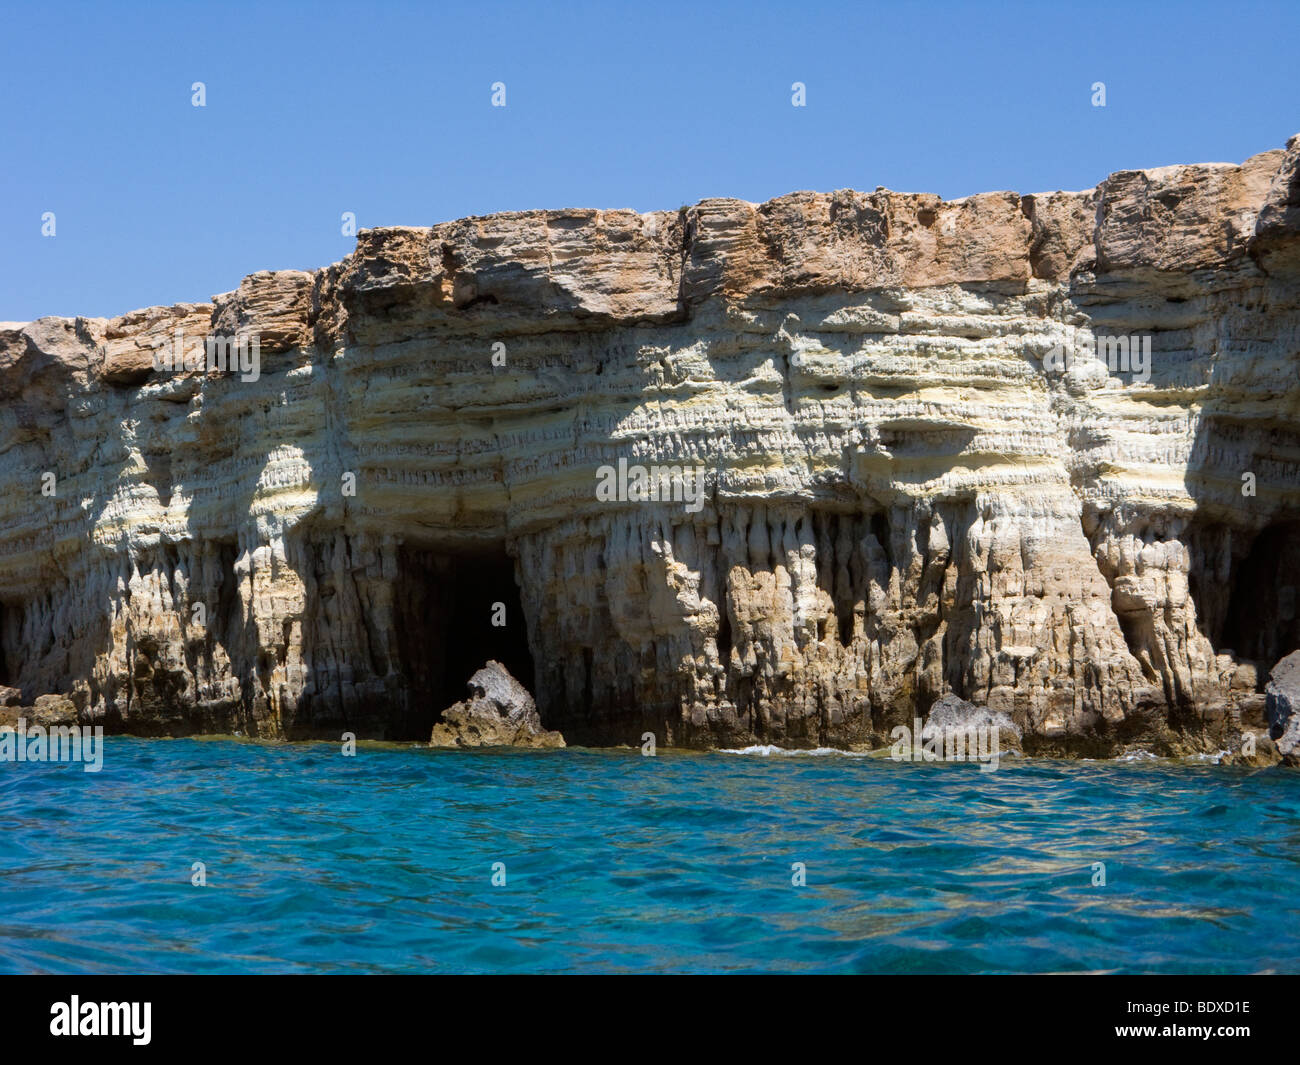 Felsformationen im Cavo Greco zwischen Ayia Napa und Halbinsel Kap Greco, Zypern. Dieser Ort ist das Schloss bezeichnet. Stockfoto